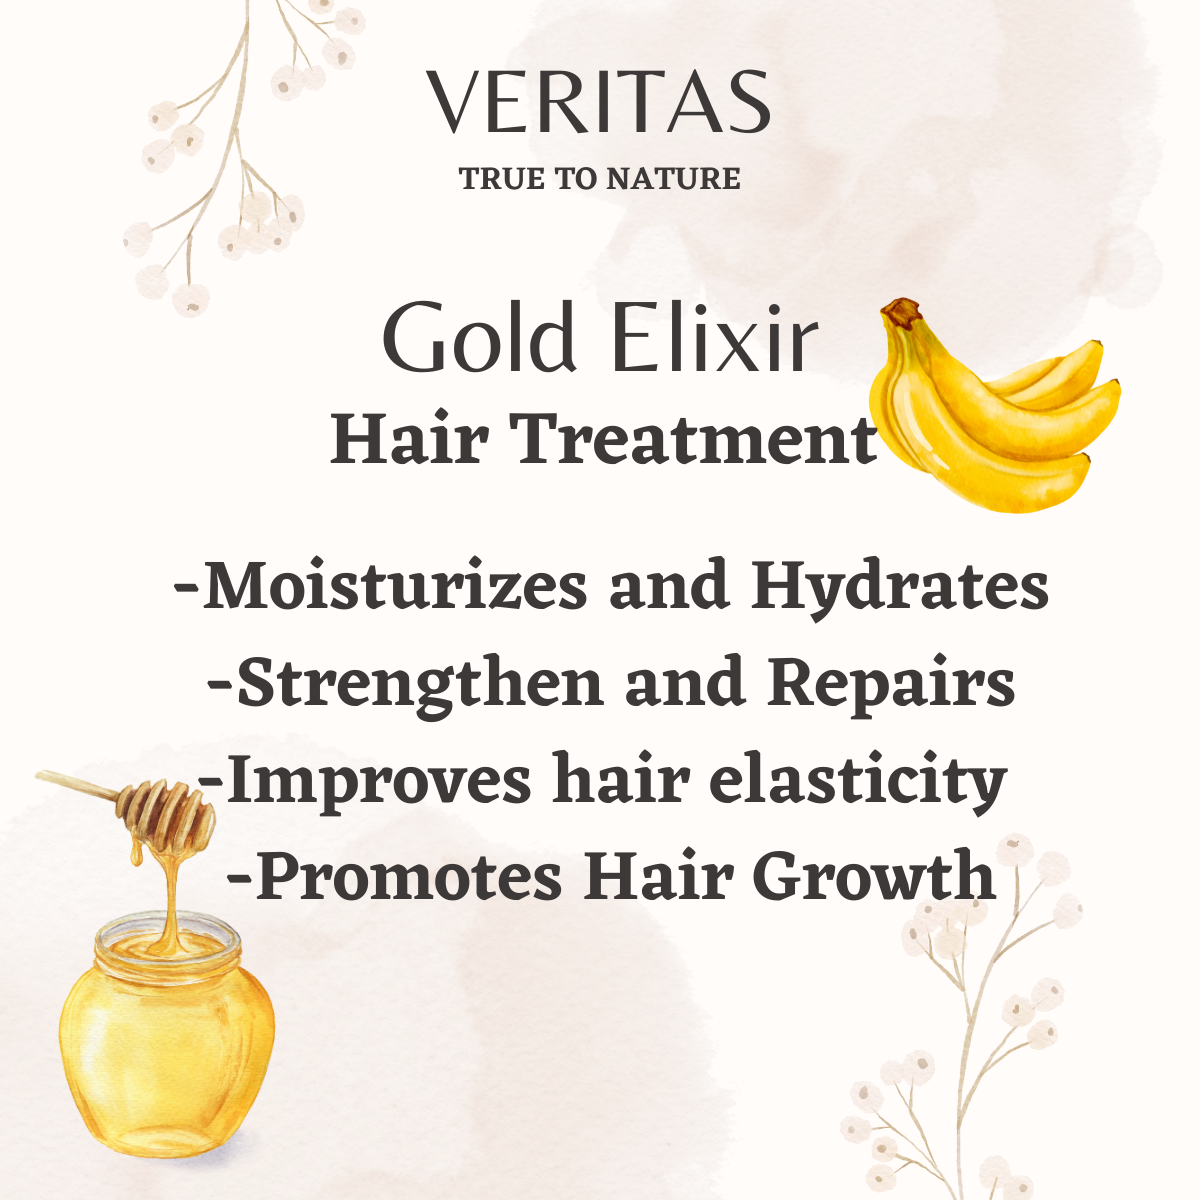 Gold Elixir Hair Treatment